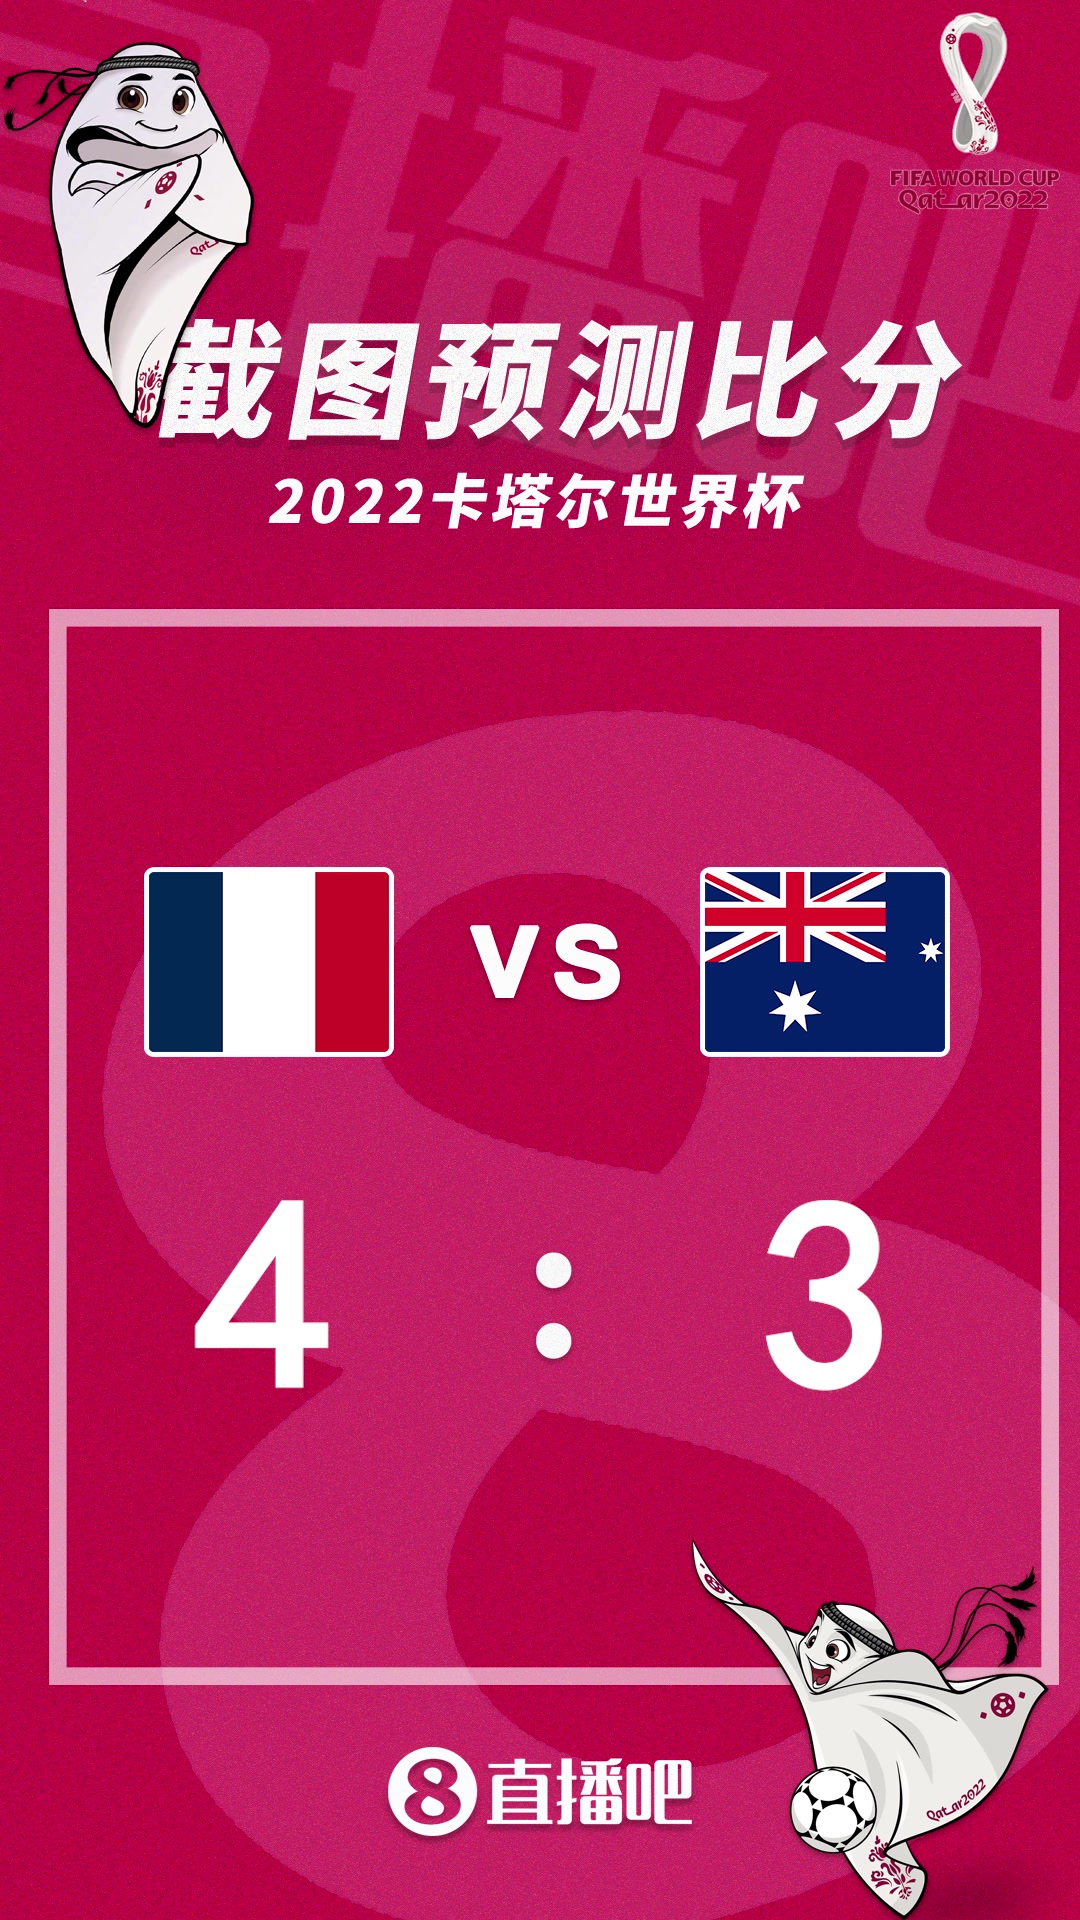 卫冕之师出征！3：00法国vs澳大利亚比分预测